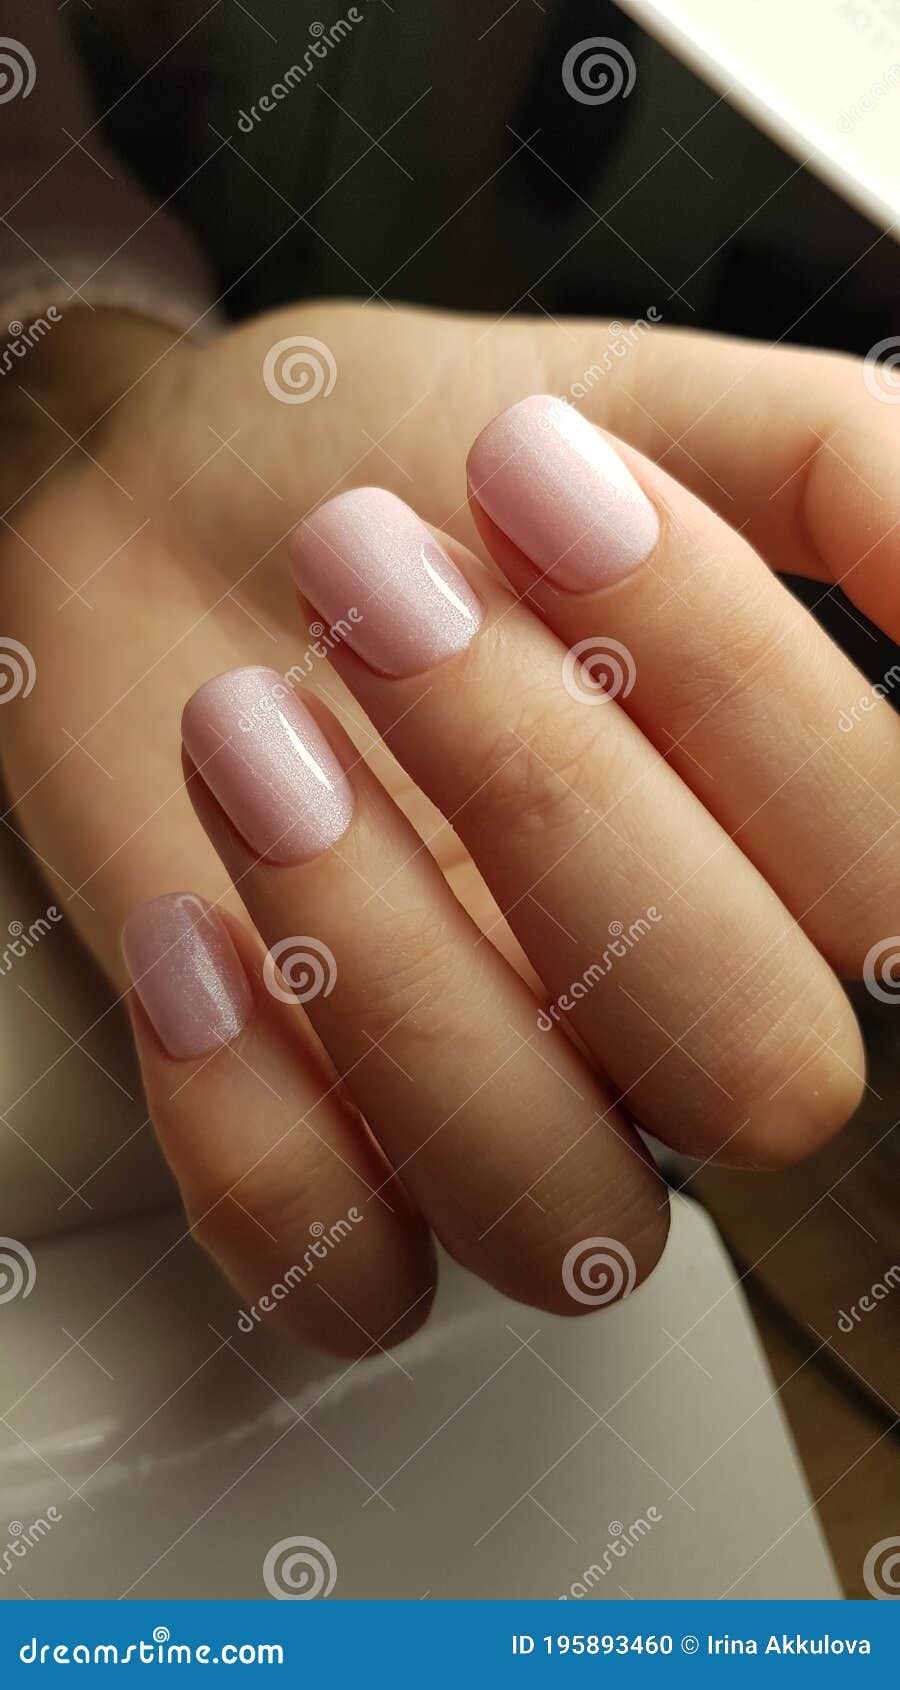 Hot coffee | Matte nails, Brown nails, Beautiful nails